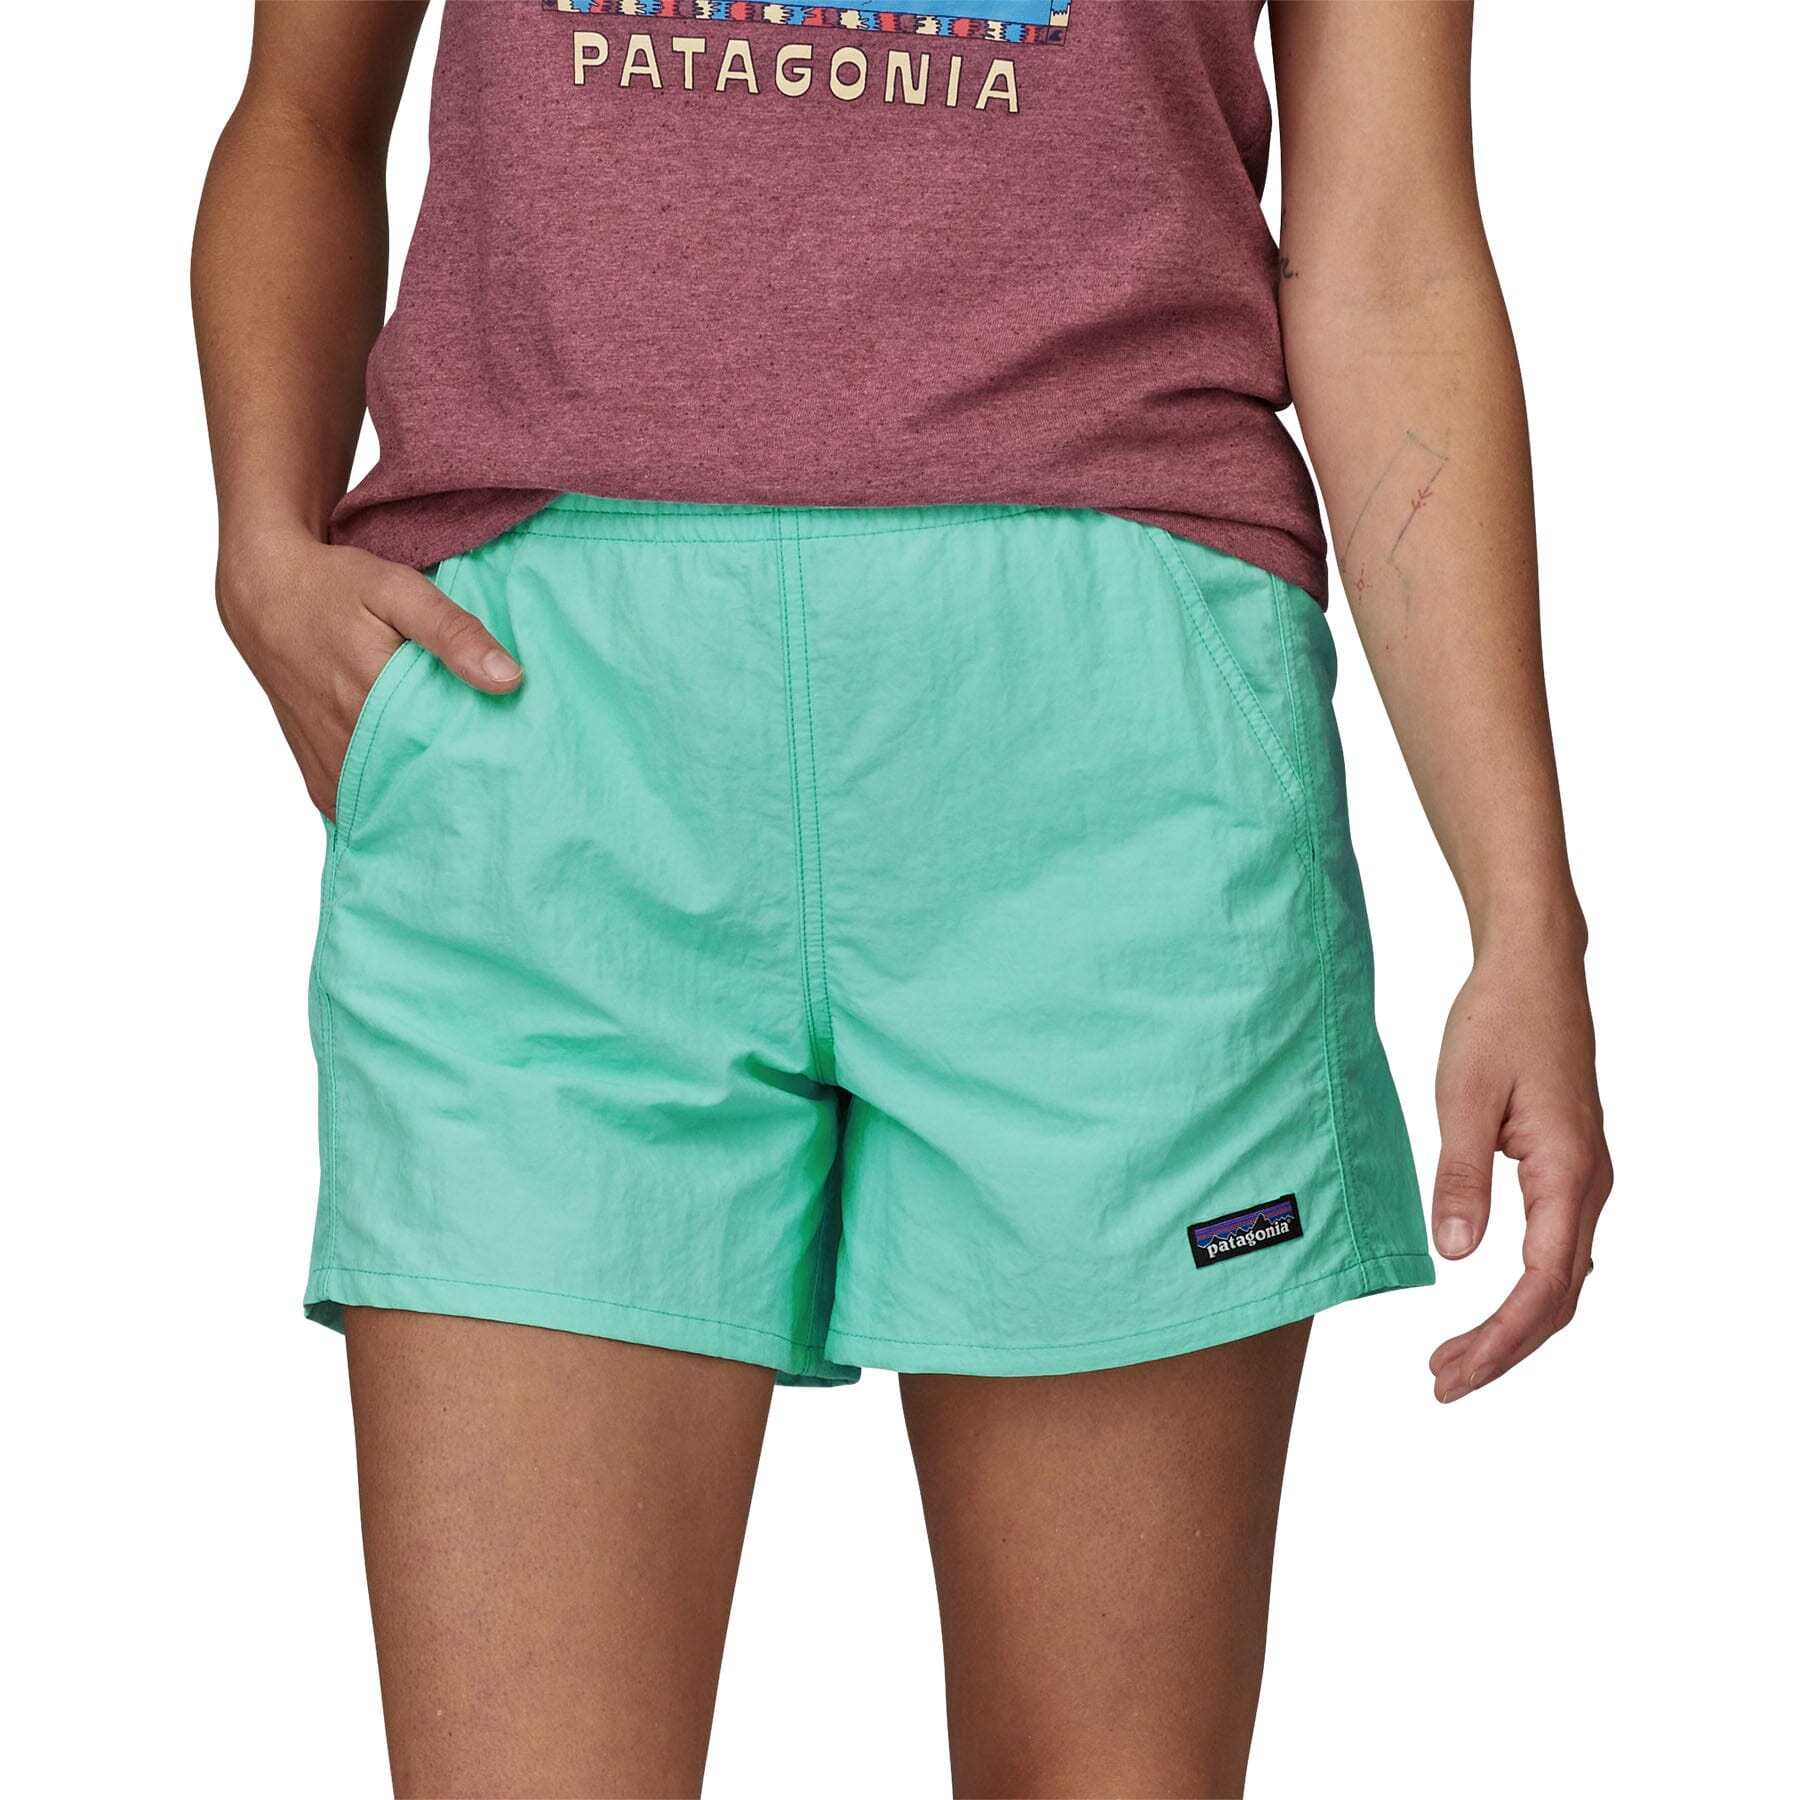 Patagonia Baggies Shorts バギーズ ショーツ 5インチ